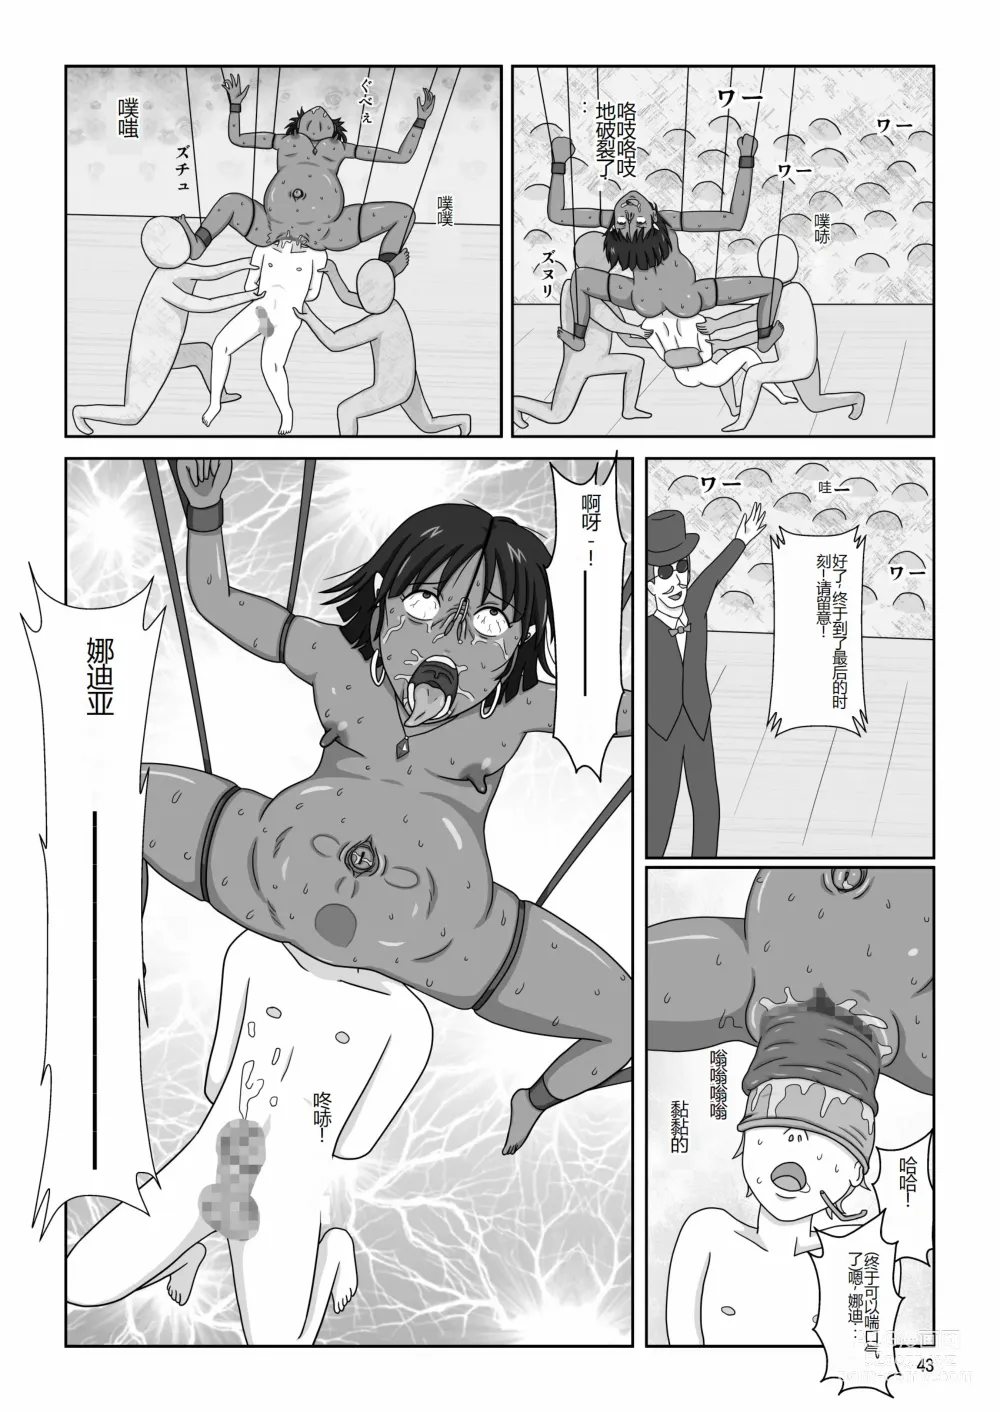 Page 46 of doujinshi Kasshoku no Shoujo Nadia ~Kyougaku no Yoru Kouen~